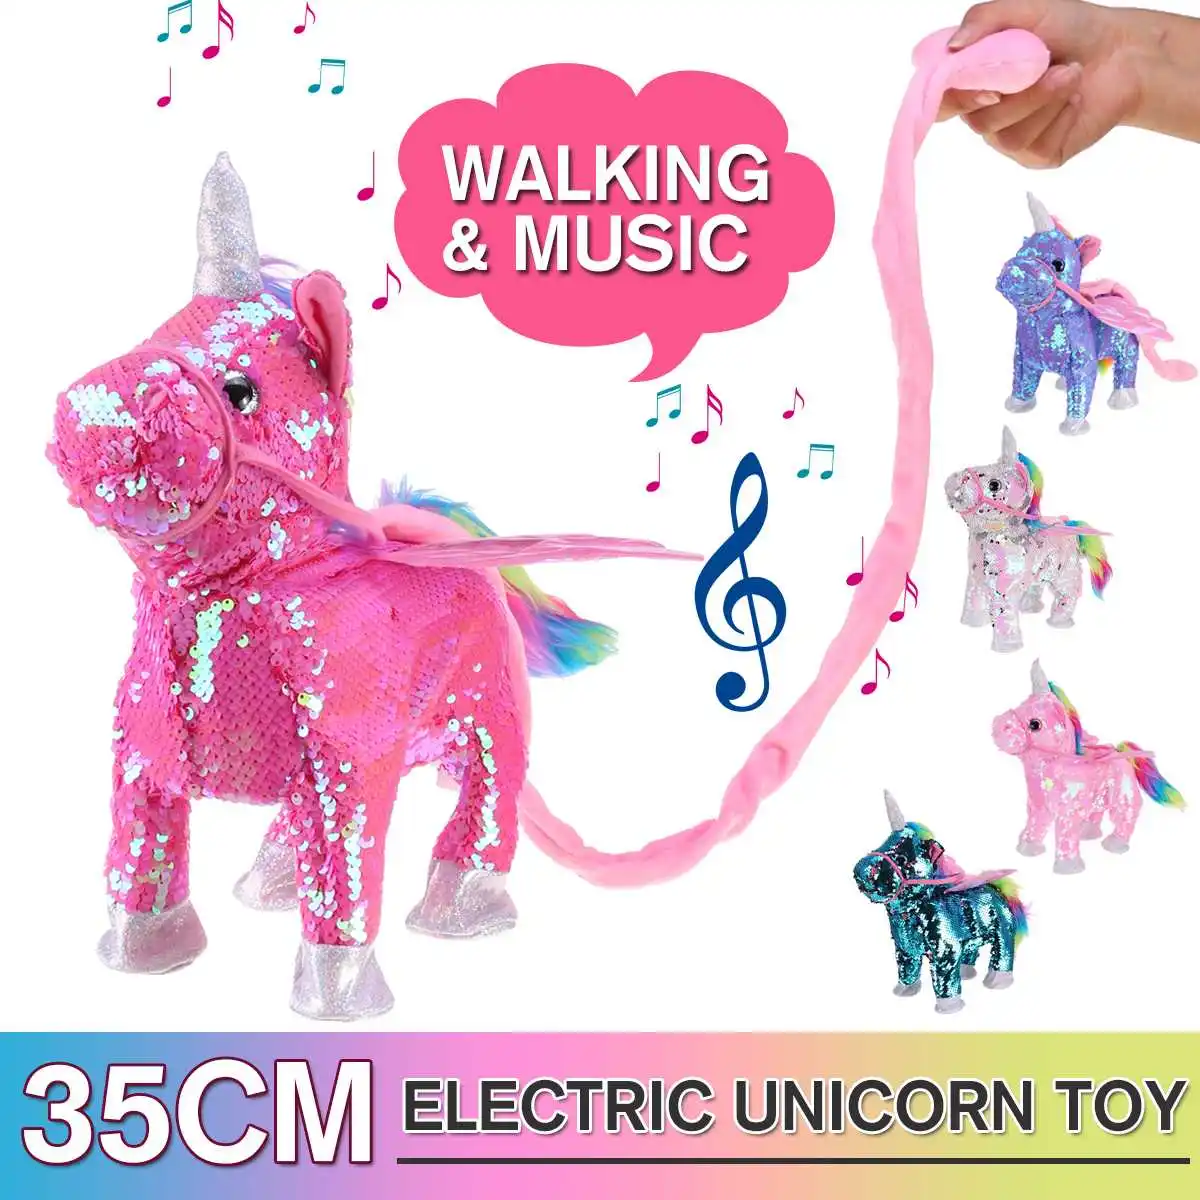 Милый блесток Un icorn электрическая ходьба плюшевые игрушки чучело игрушка электронная музыкальная игрушка забавные игрушки для детей Рождественский подарок